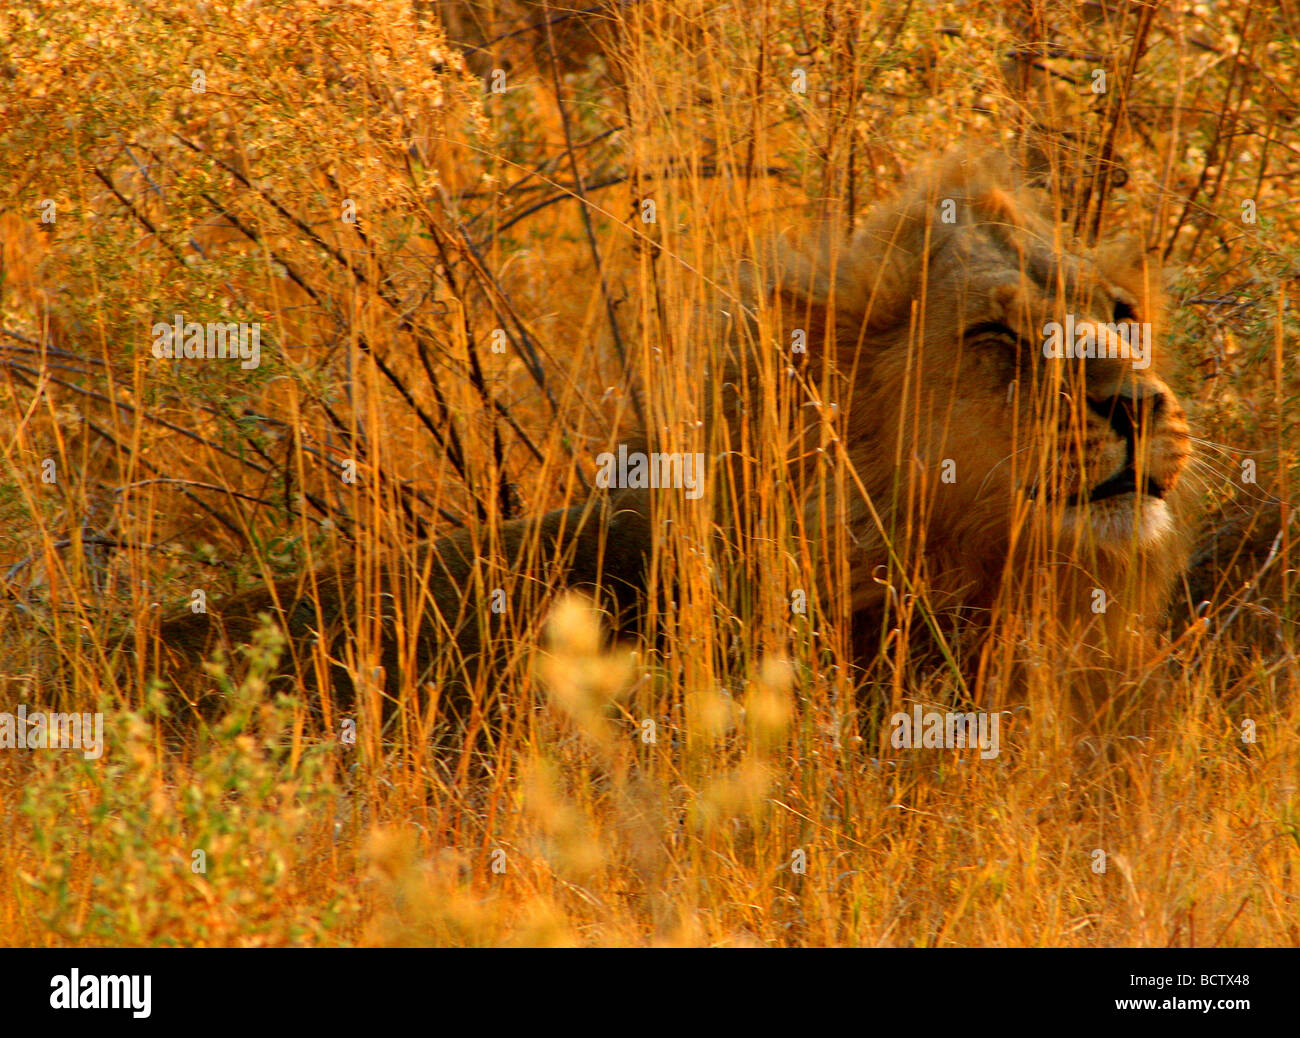 Lion (Panthera leo) giacenti in erba alta, Okavango Delta, Botswana Foto Stock